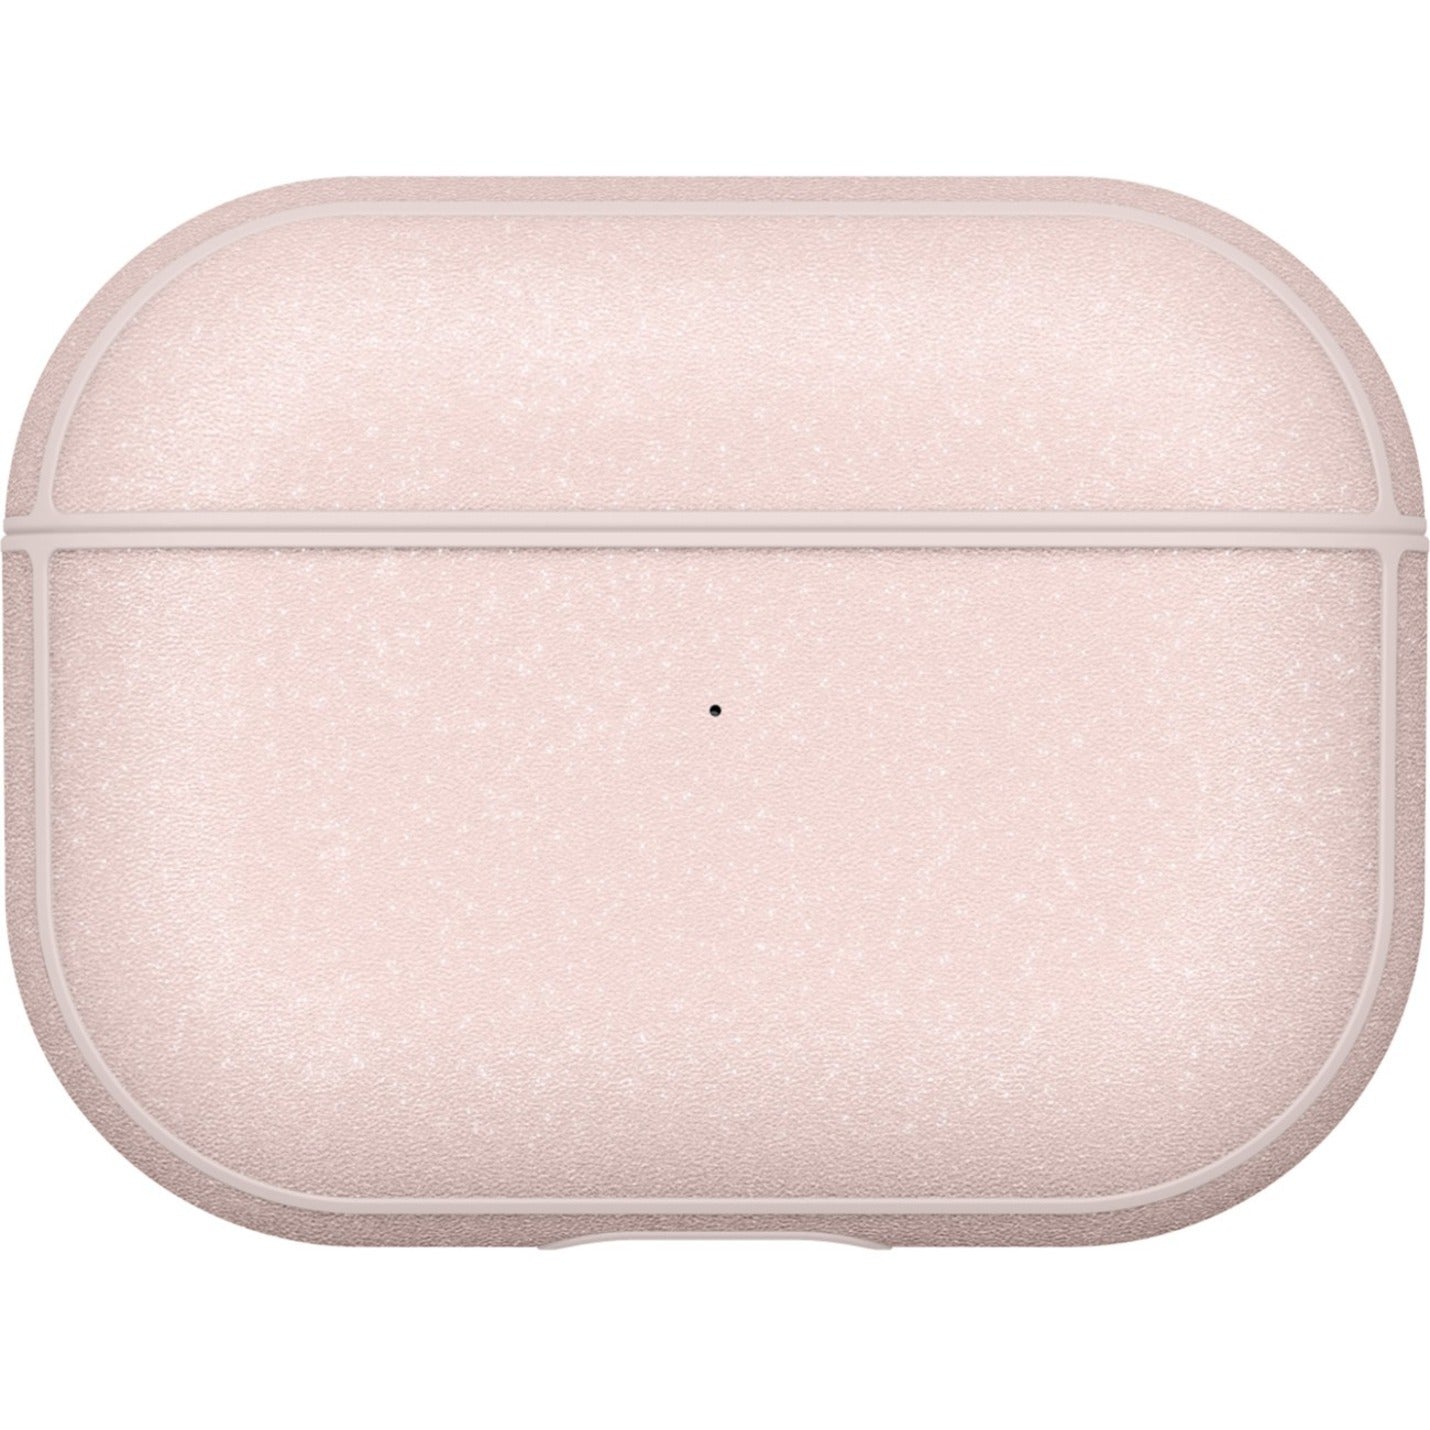 Incase Metallic Case Carrying Case Apple AirPods Pro - Rose Quartz